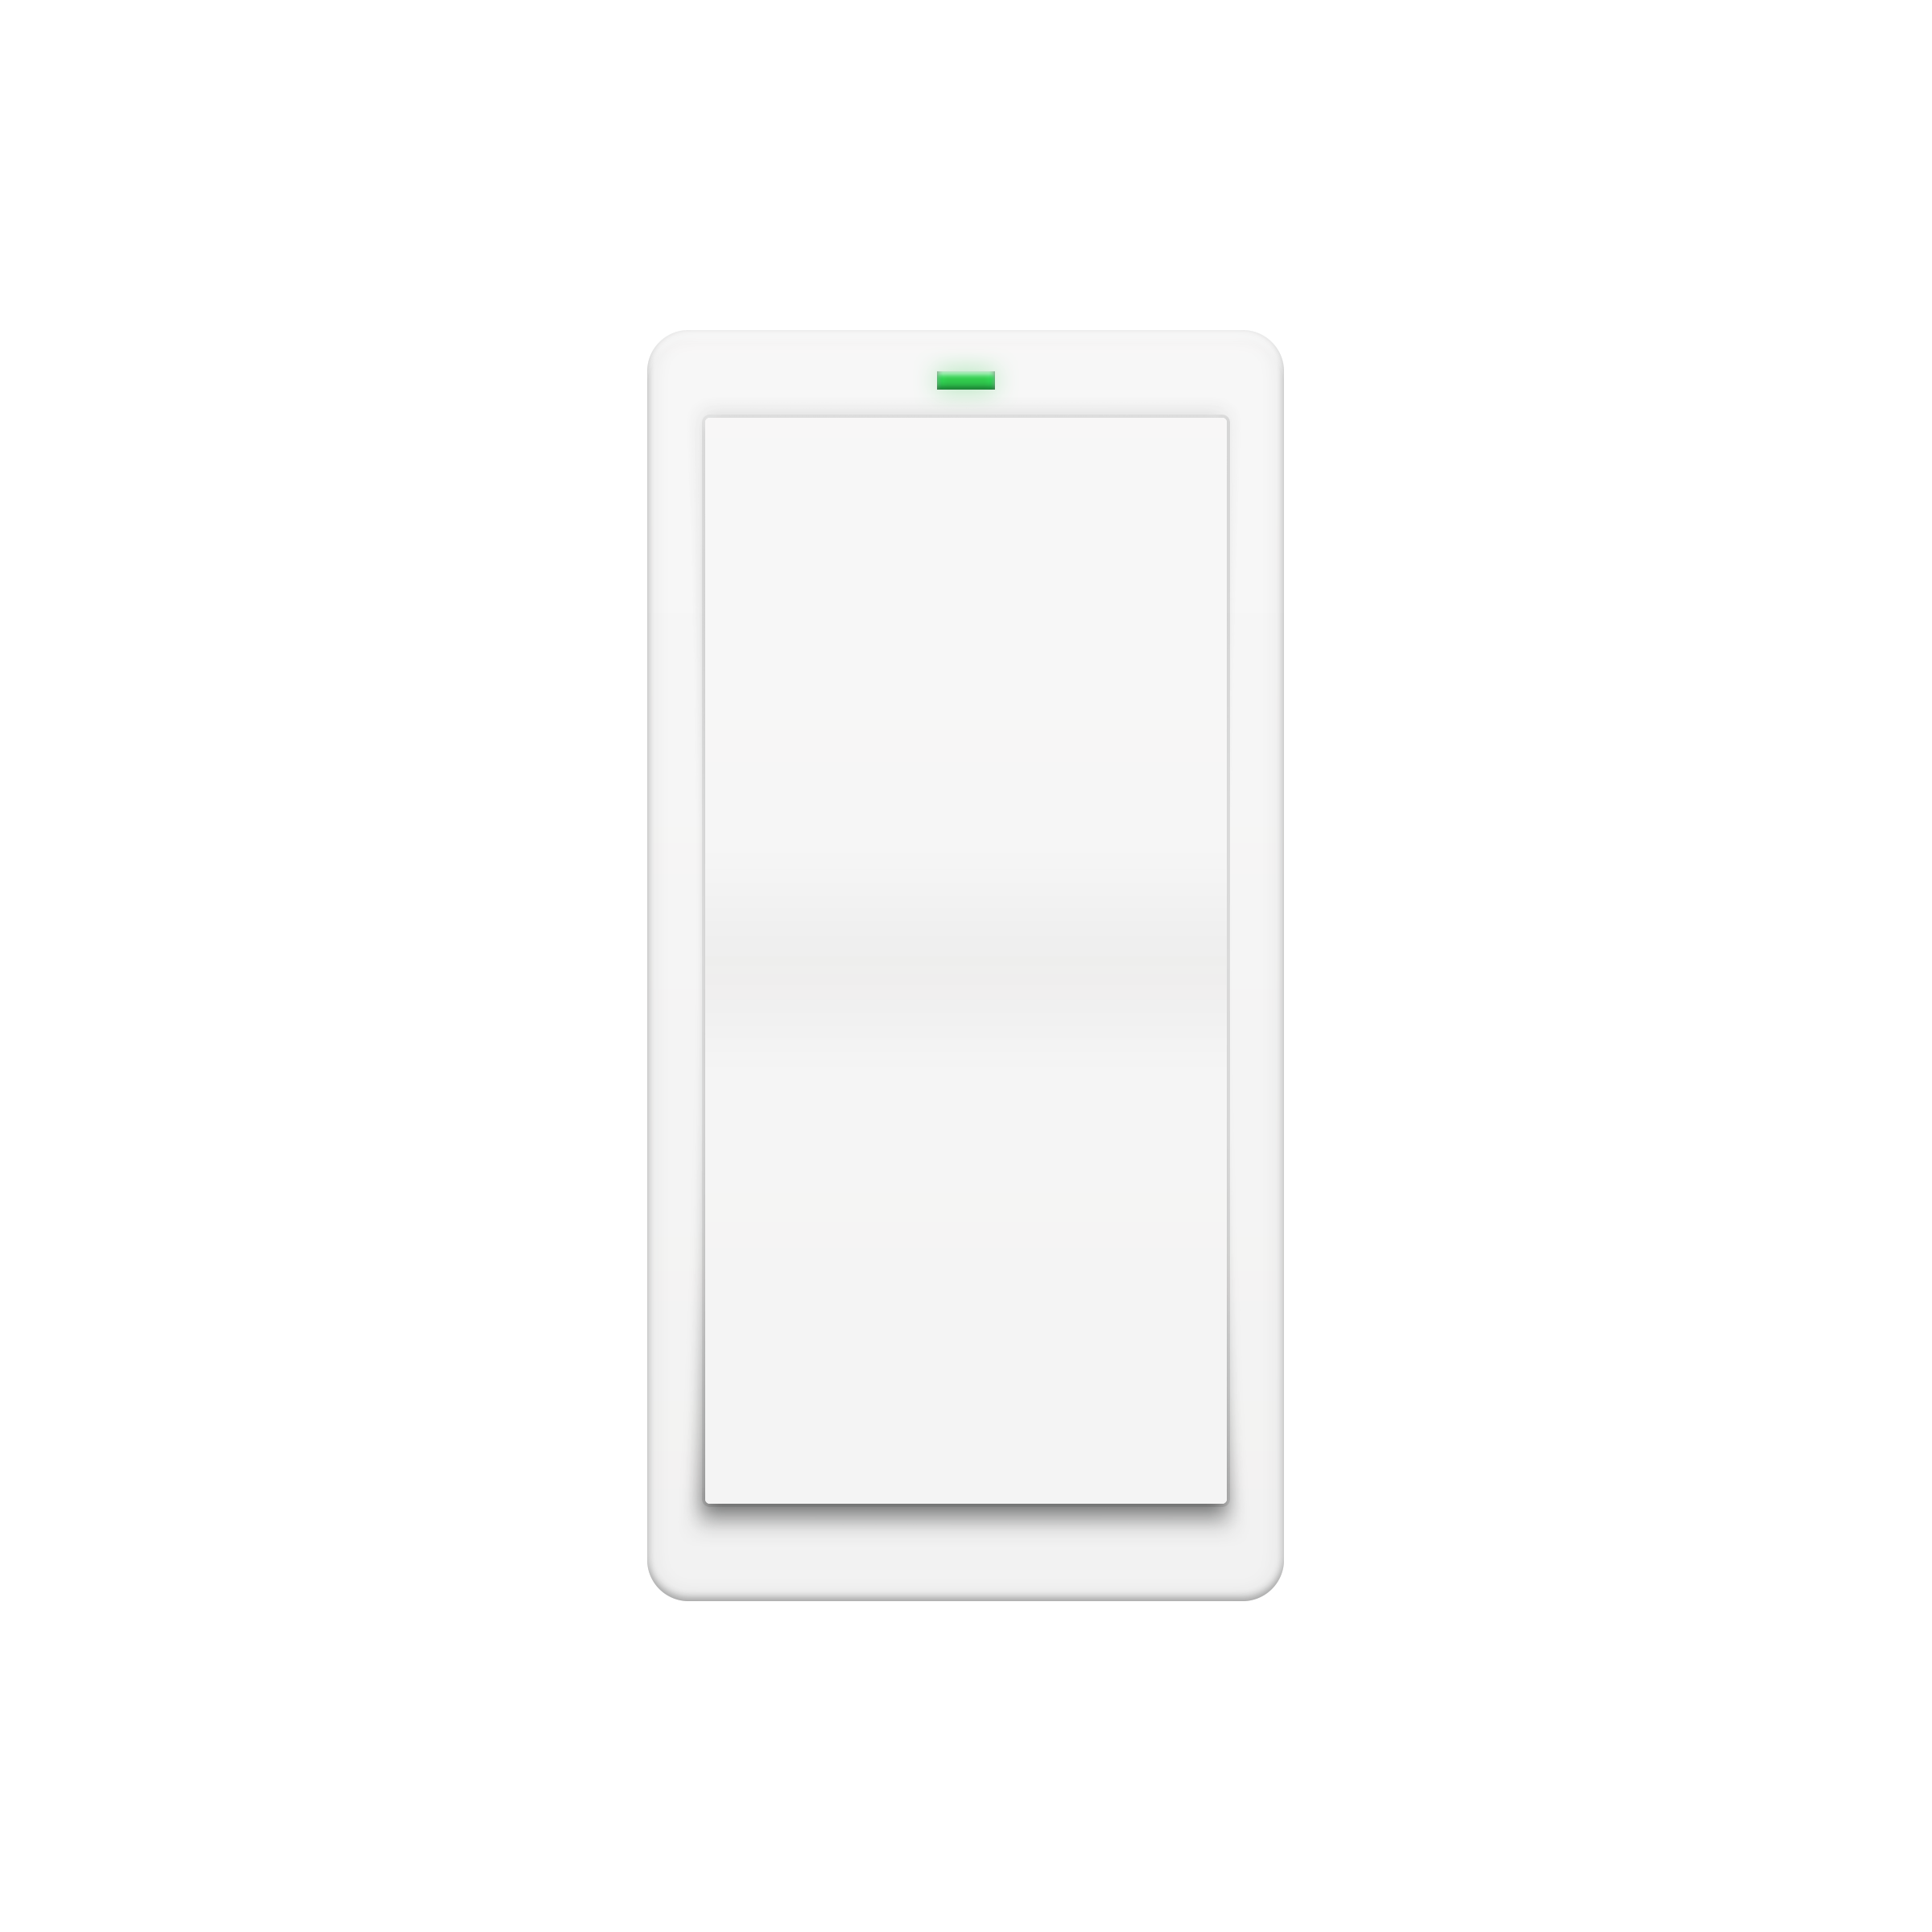 Wireless Switch — Insteon